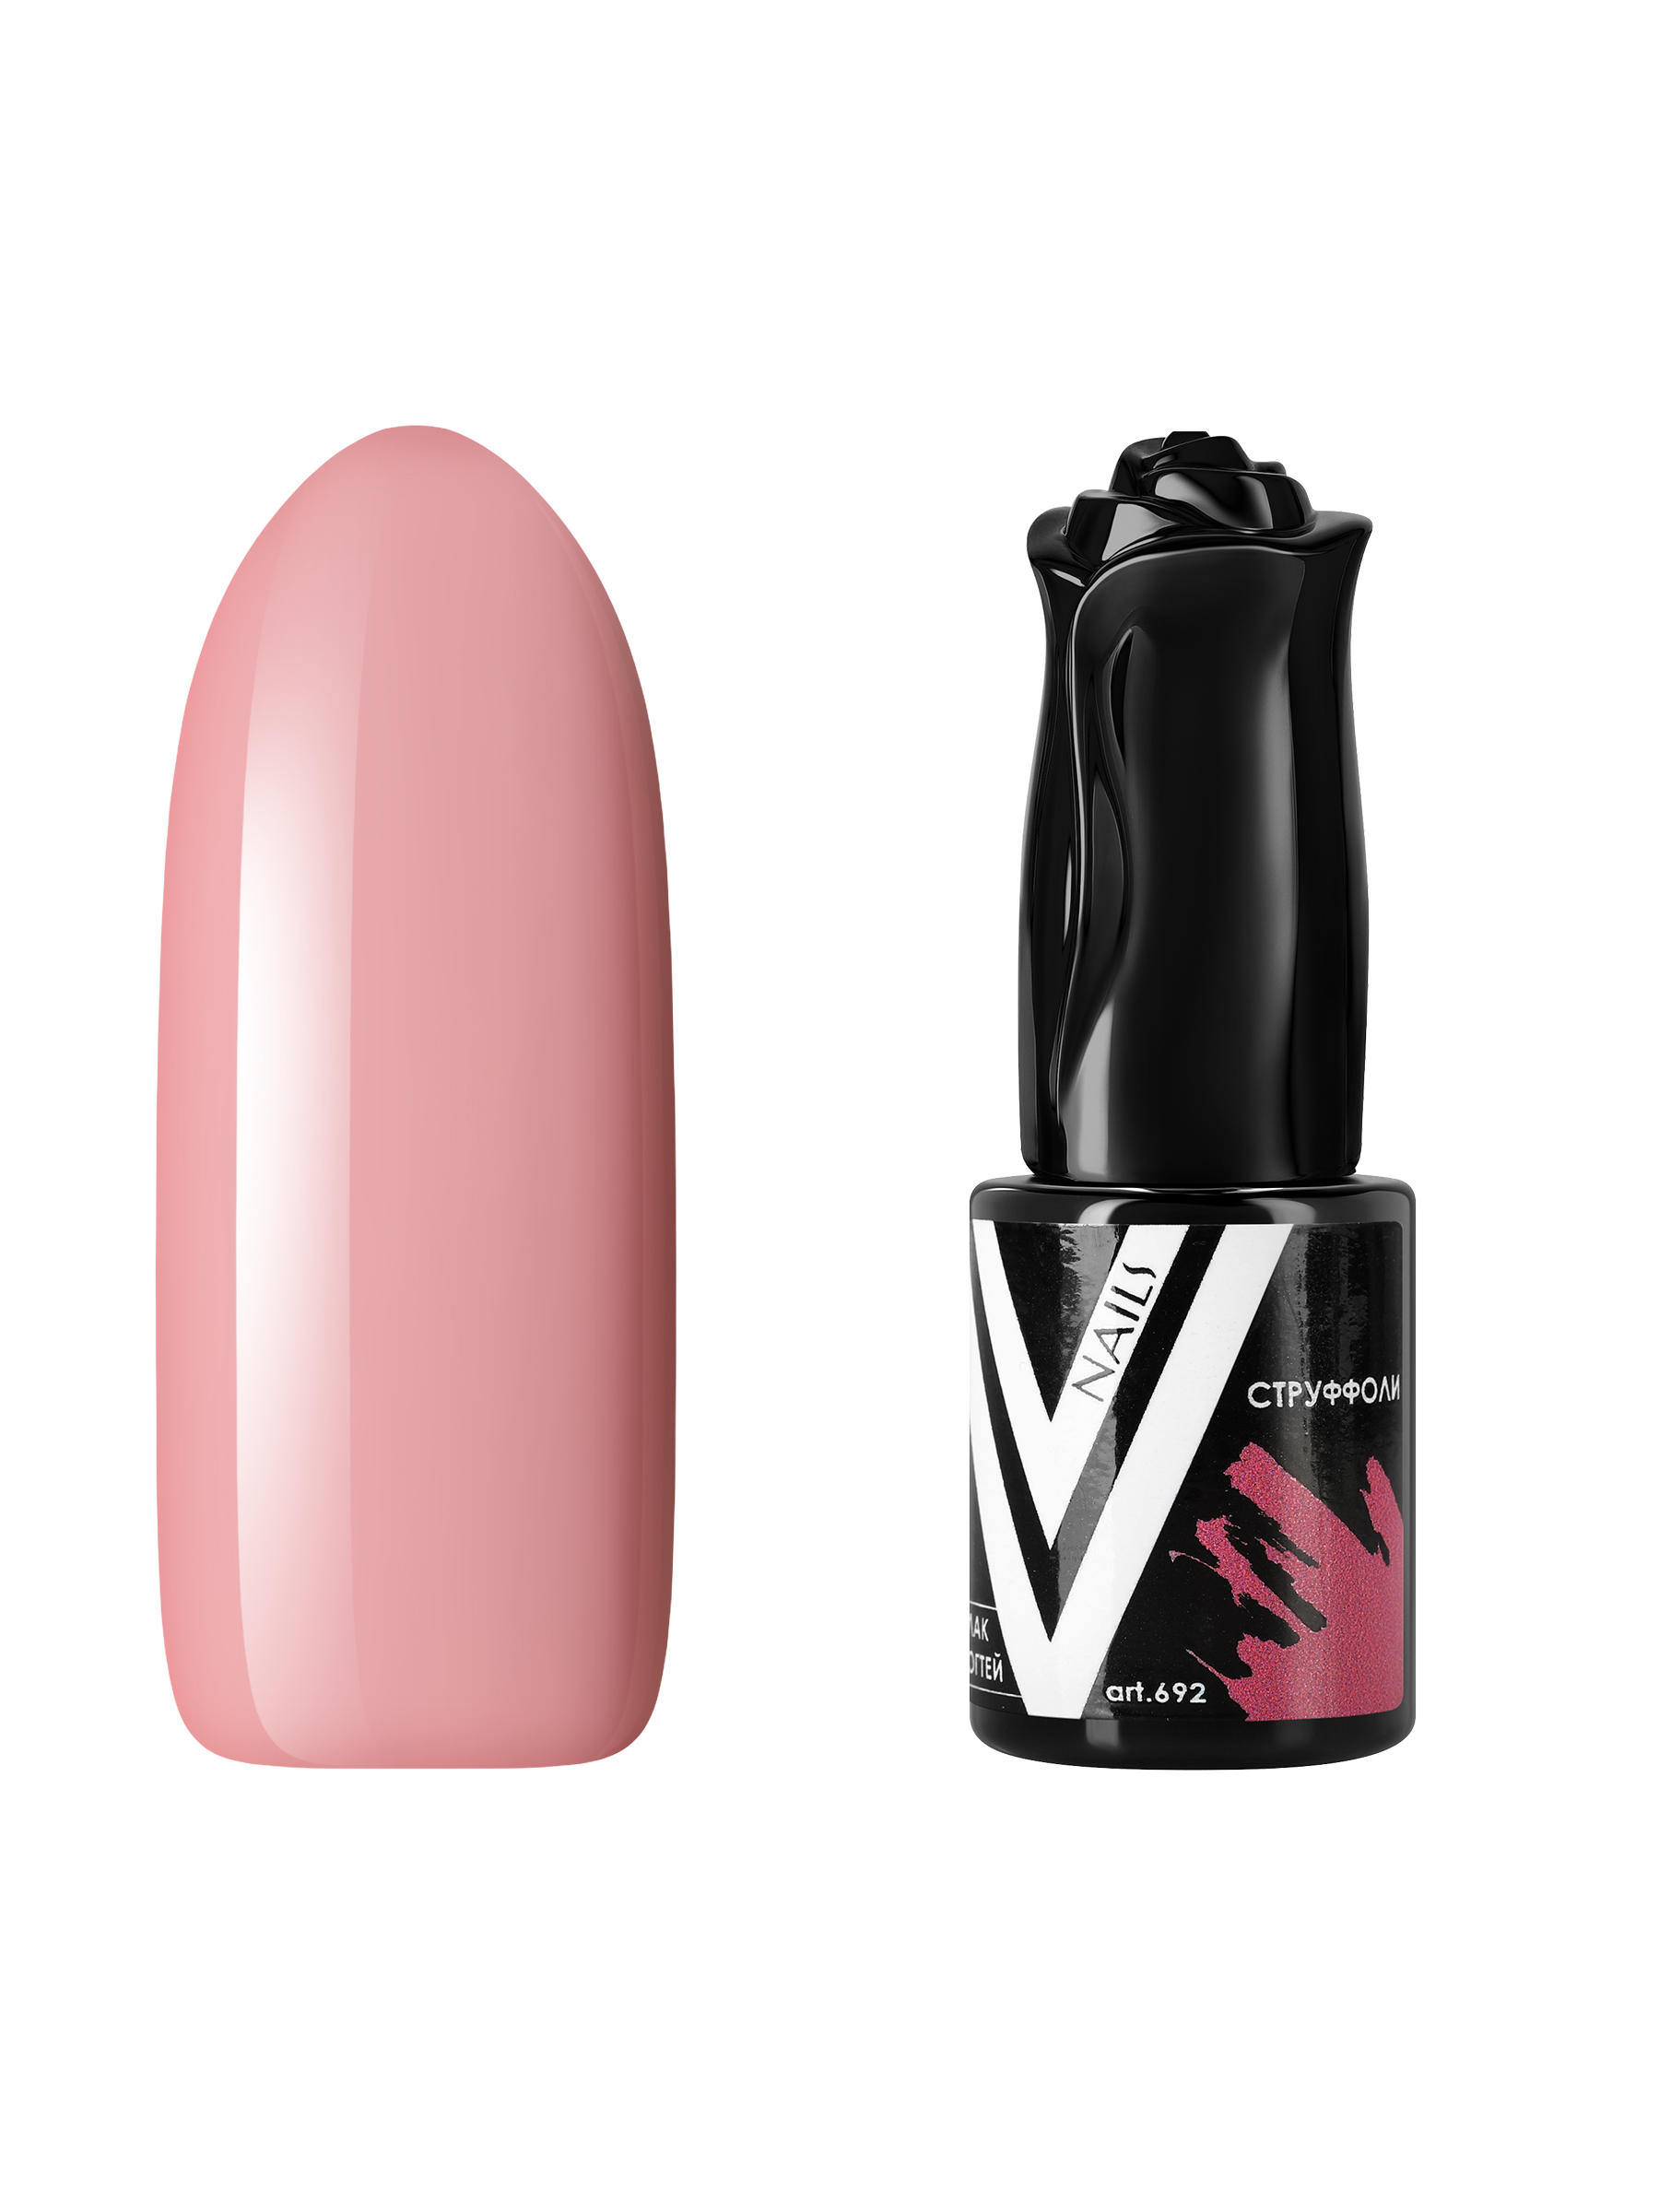 Гель-лак для ногтей Vogue Nails пыльный пастельный приглушенный, розовый бежевый, 10 мл крем краска collage 26061 6 06 темный блондин теплый 60 мл натуральный бежевый коричневый 60 мл